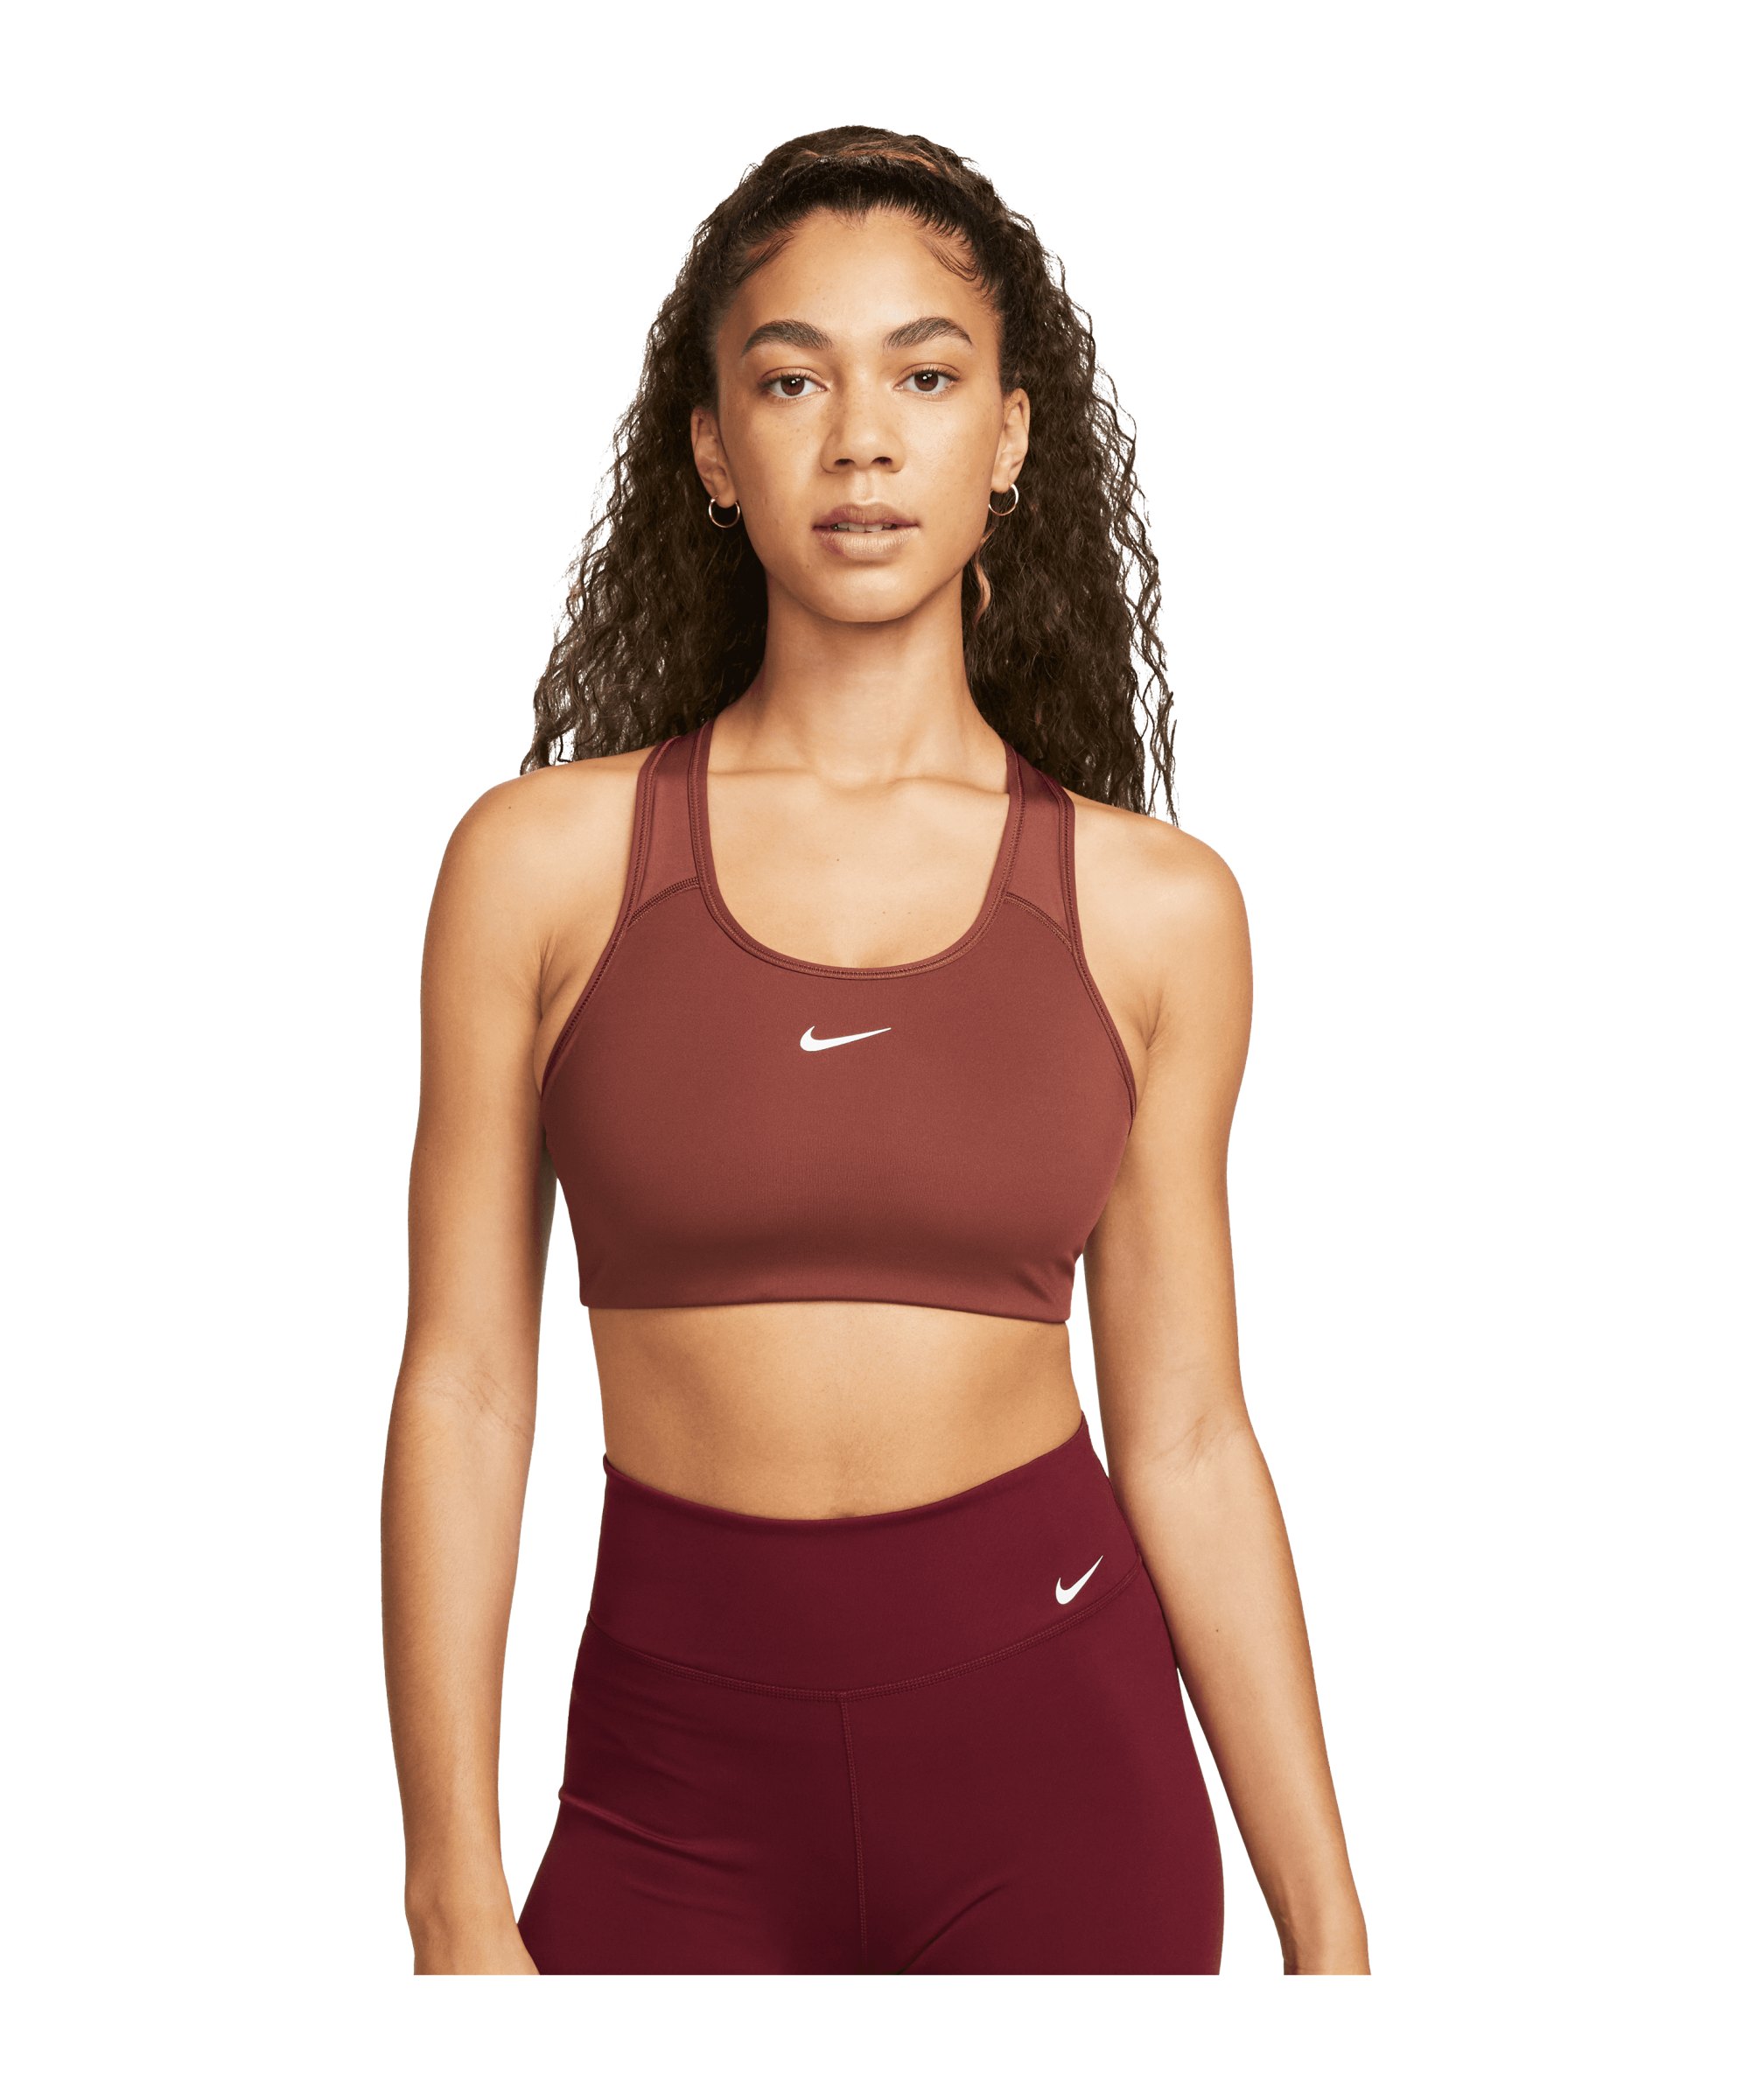 Damen Nike Pro Training und Fitness Unterwäsche. Nike DE